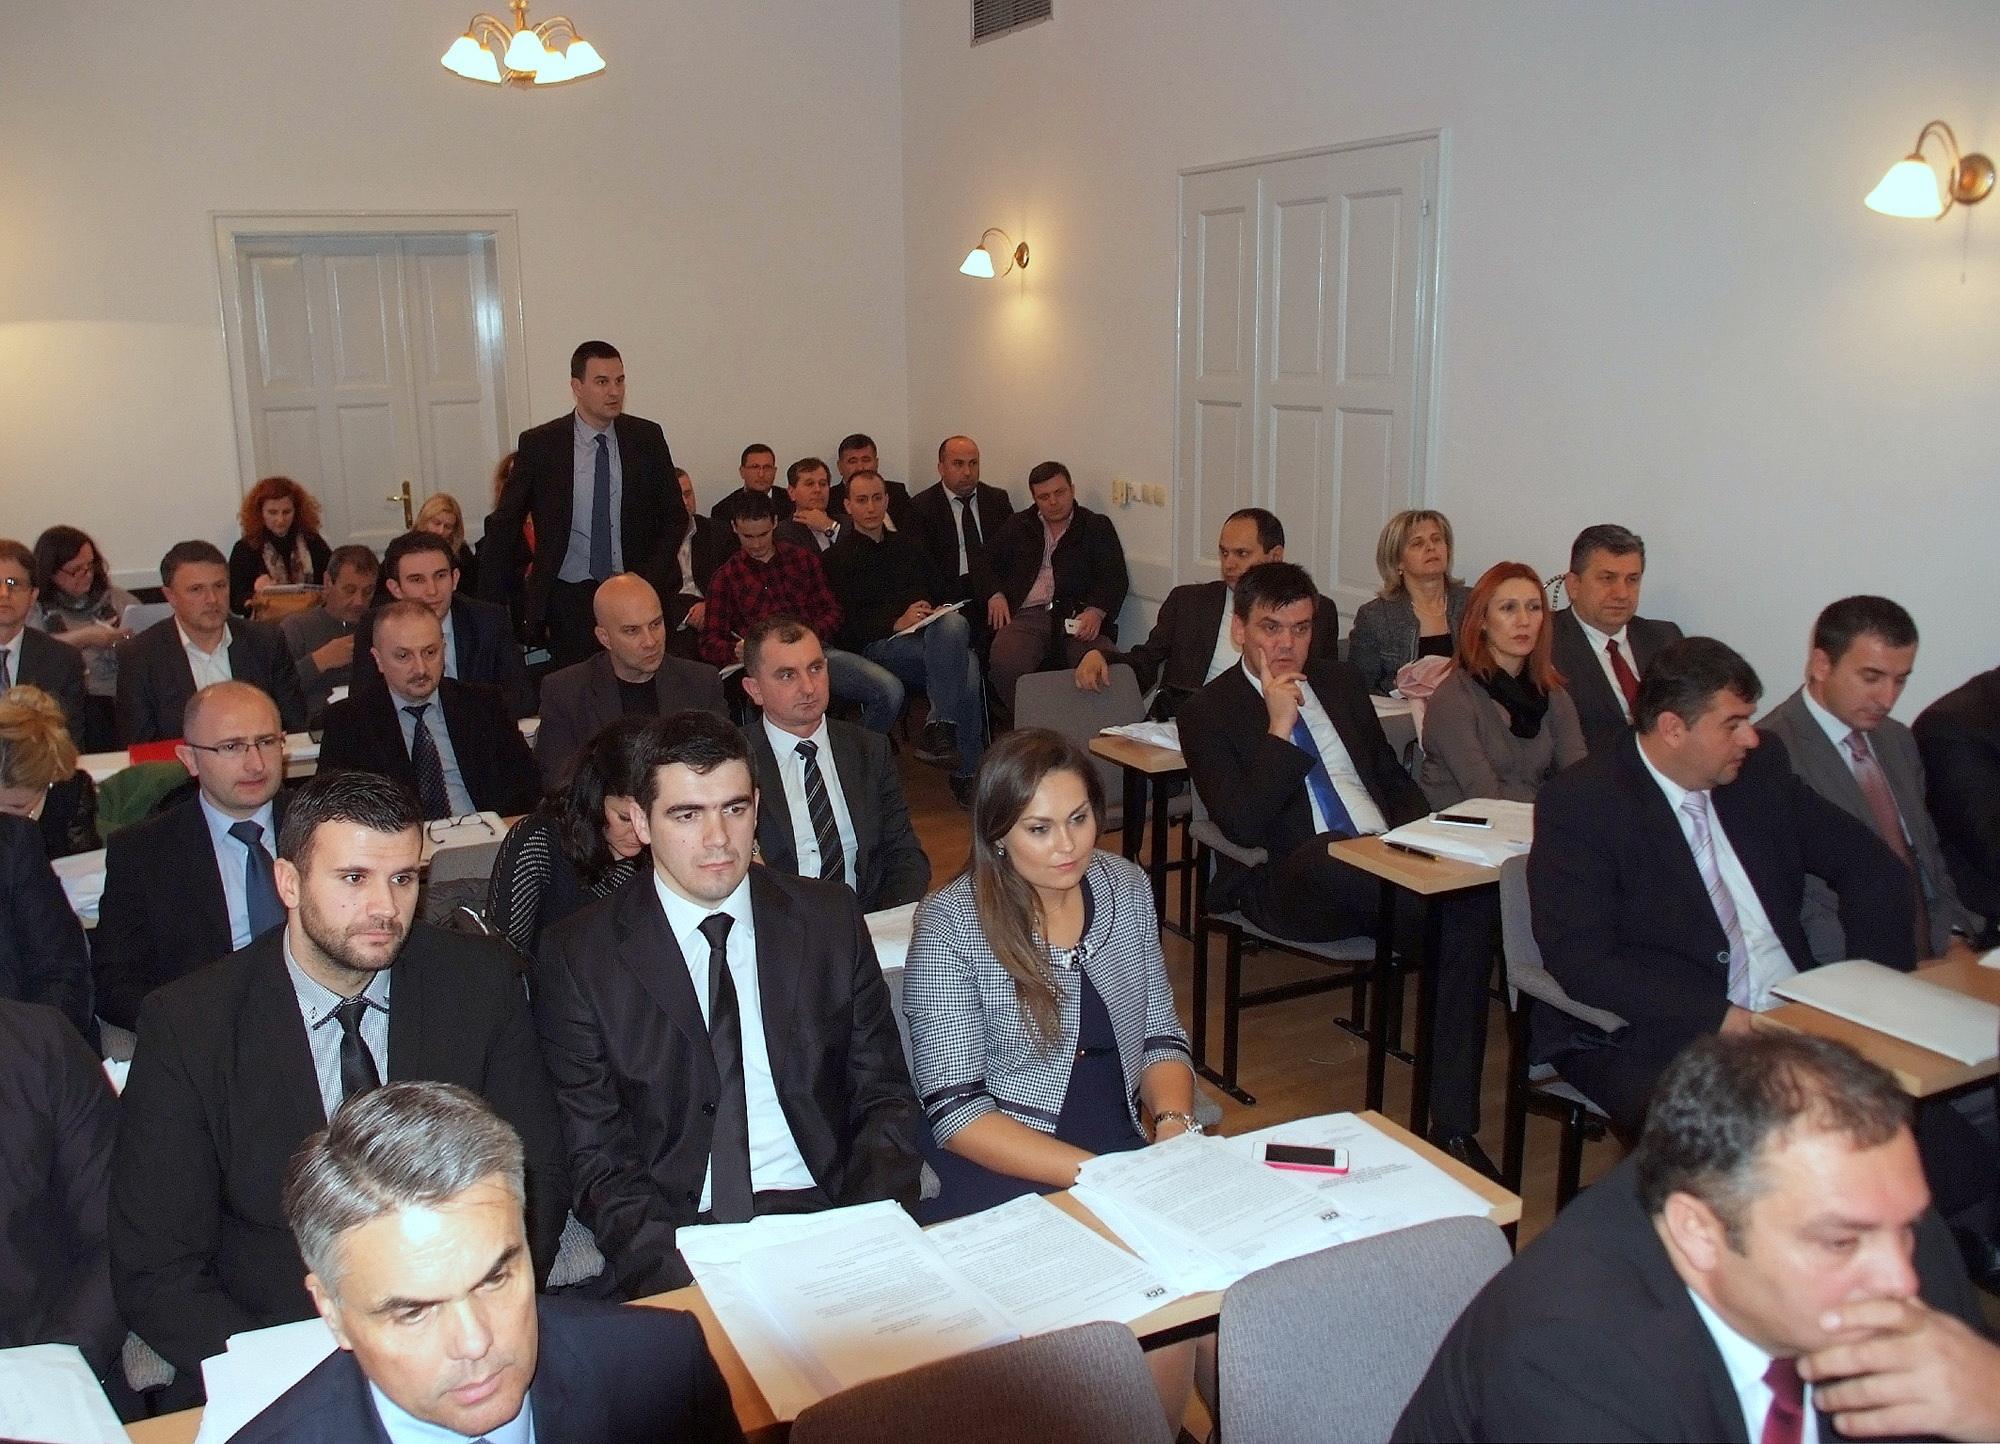 Zbog konstitutivnosti Srba ponovo prekinuta sjednica Skupštine HNK